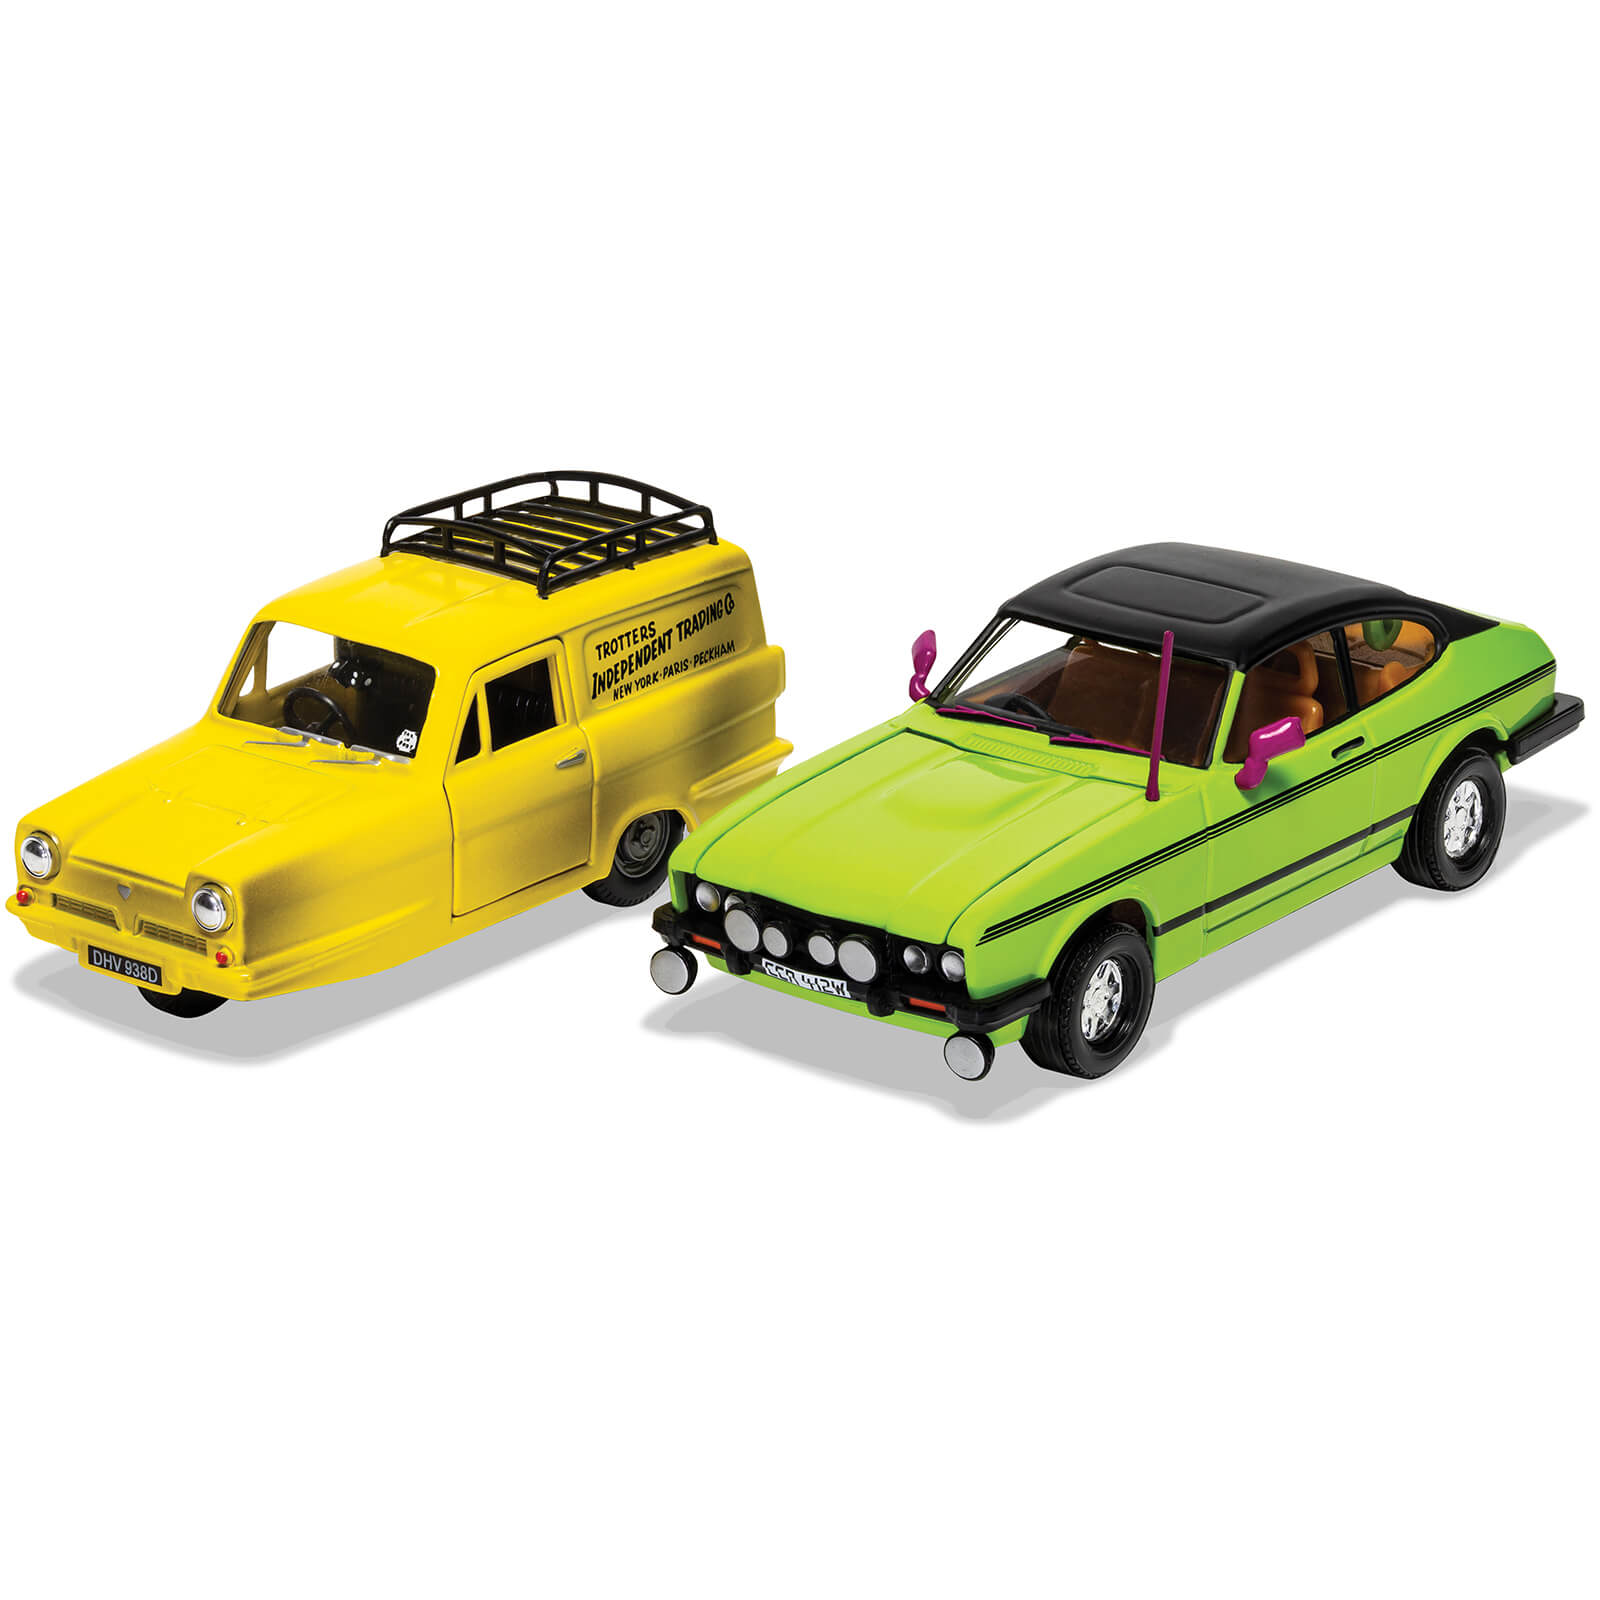 Set de maquetas Reliant Regal y Ford Capri Mk II de Del Boy - Escala 1:36